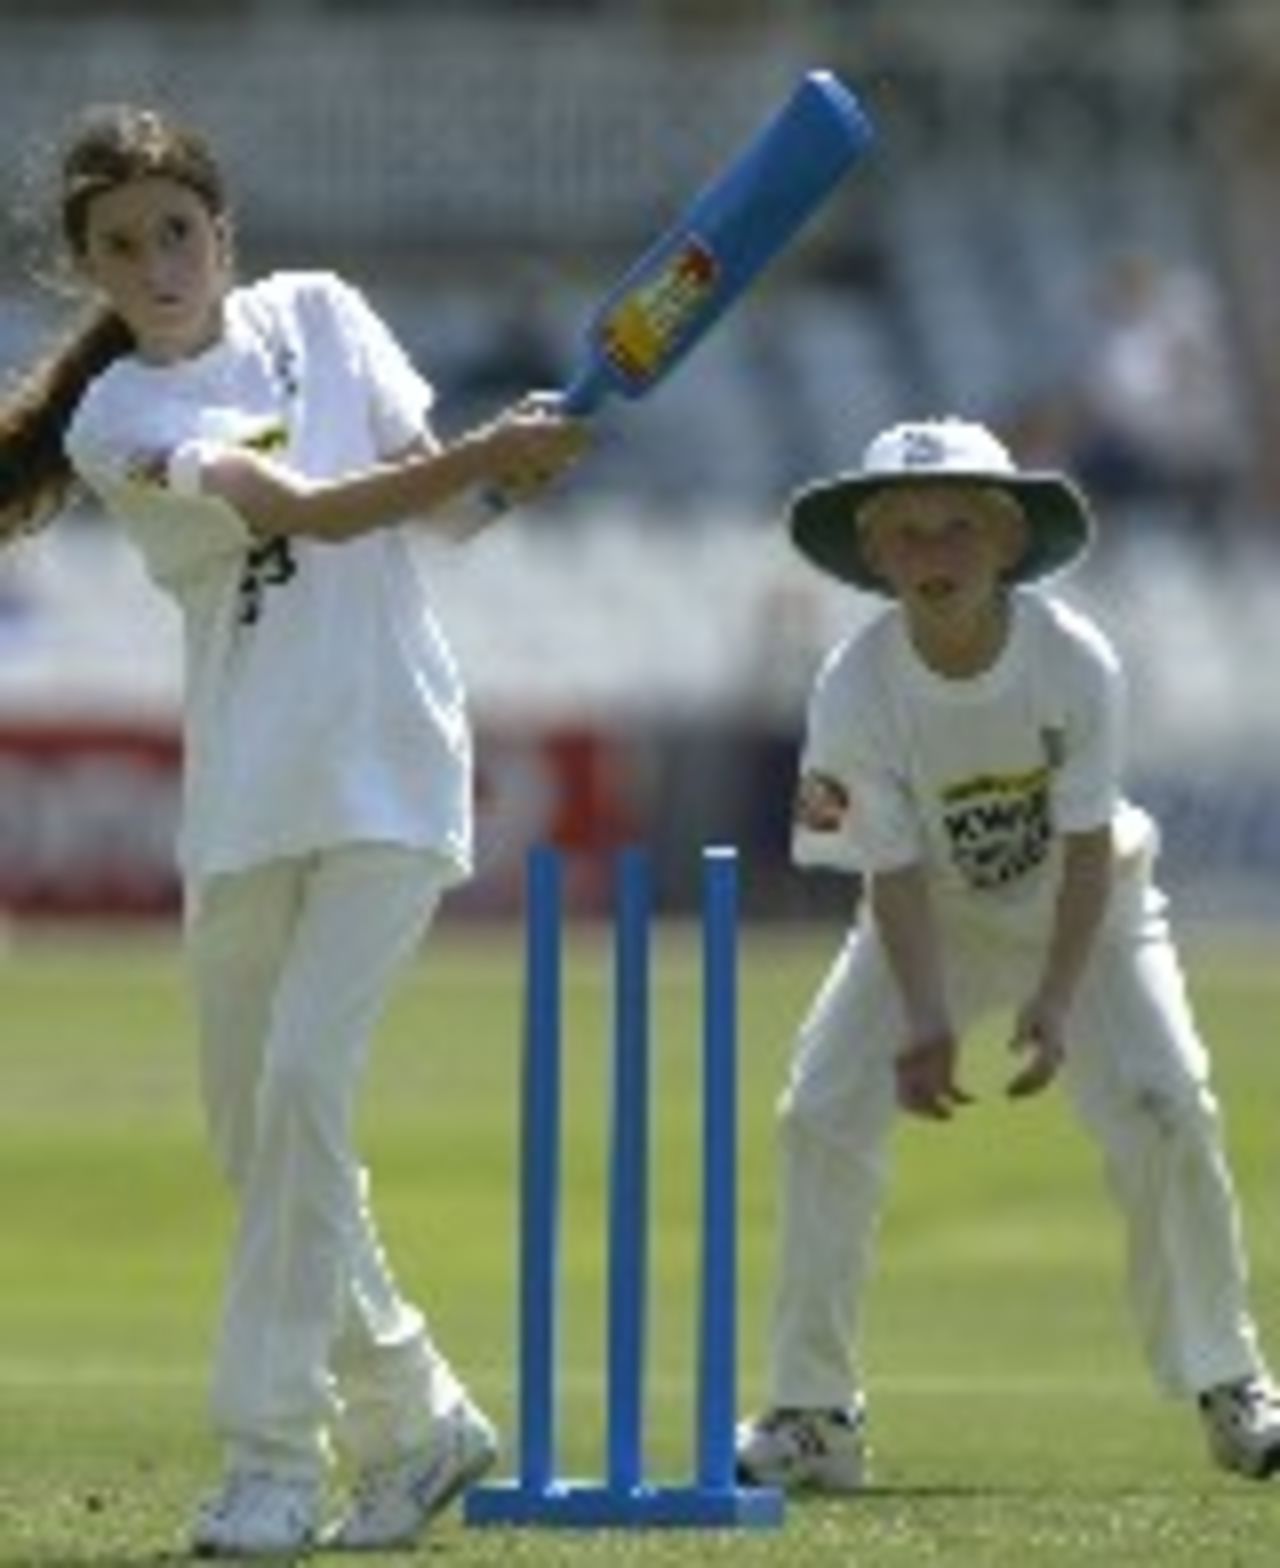 Kwik Cricket action: children enjoying the fun game